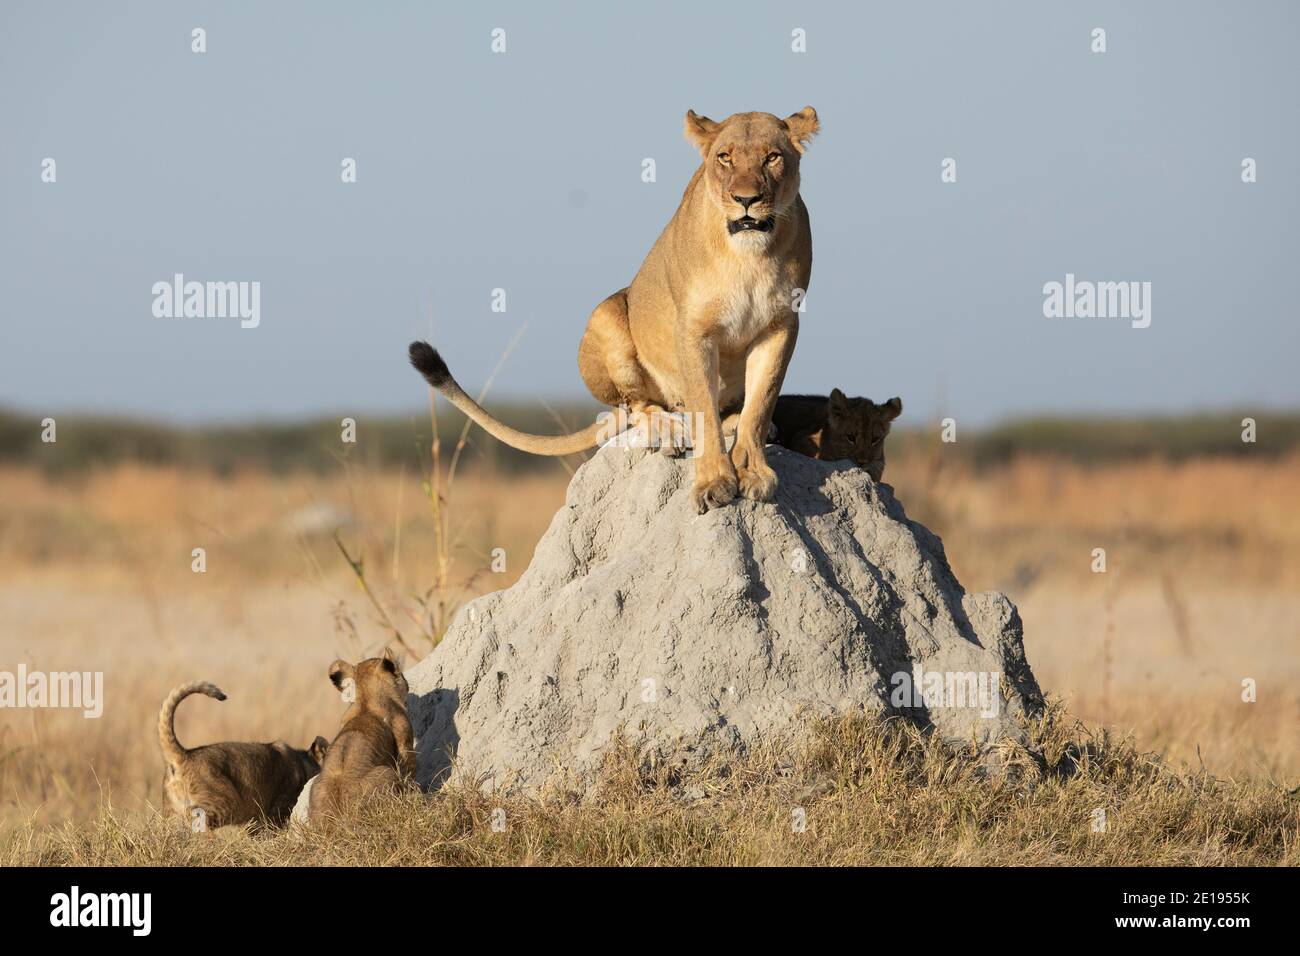 La lionne femelle assise sur un termite avec son petit les cubs essayant de l'escalader au soleil du matin à Savuti Réserve au Botswana Banque D'Images